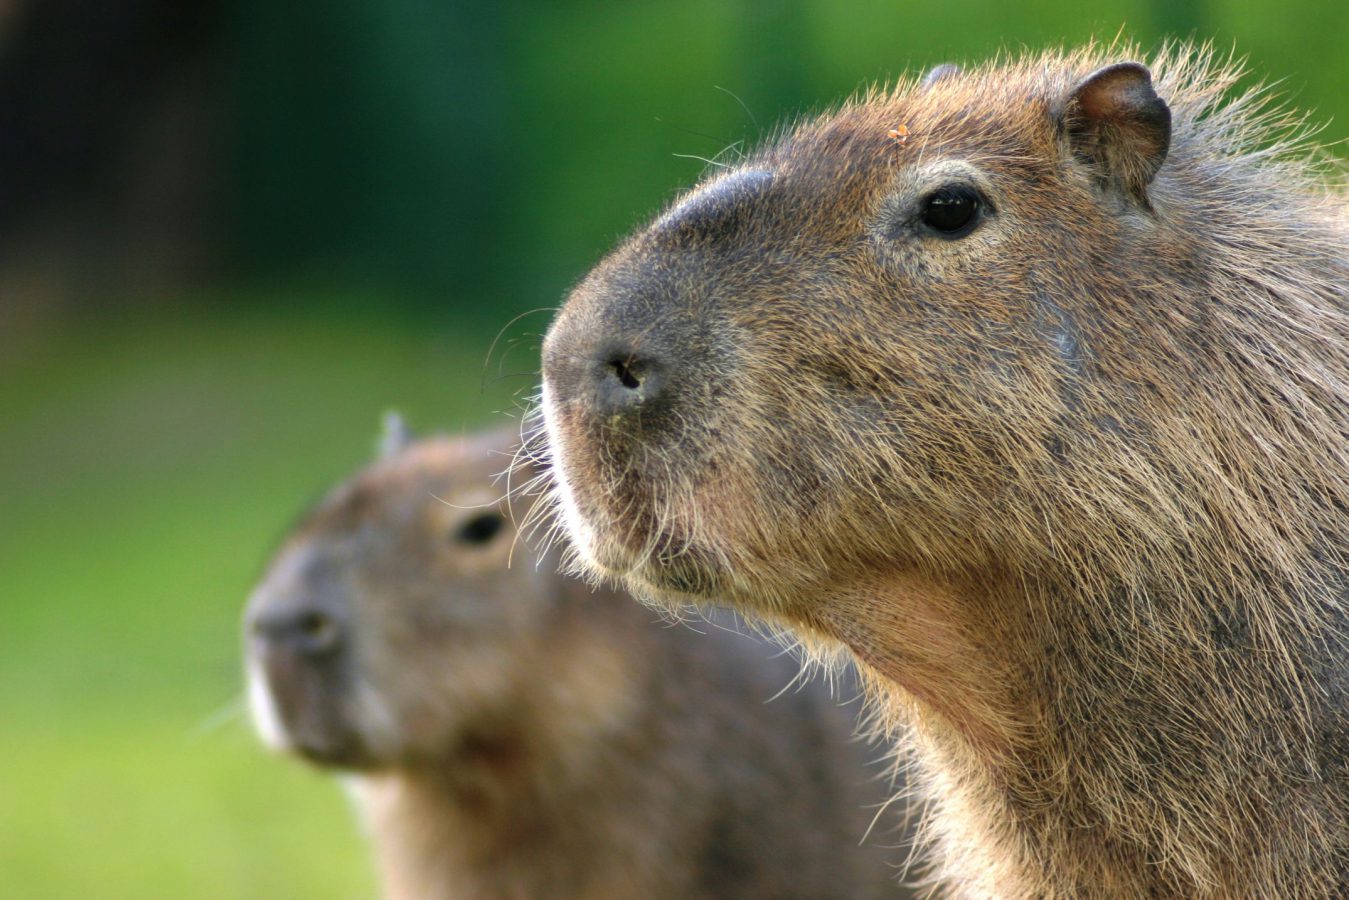 Capybara - Characteristics, Lifespan, Facts About Capybaras